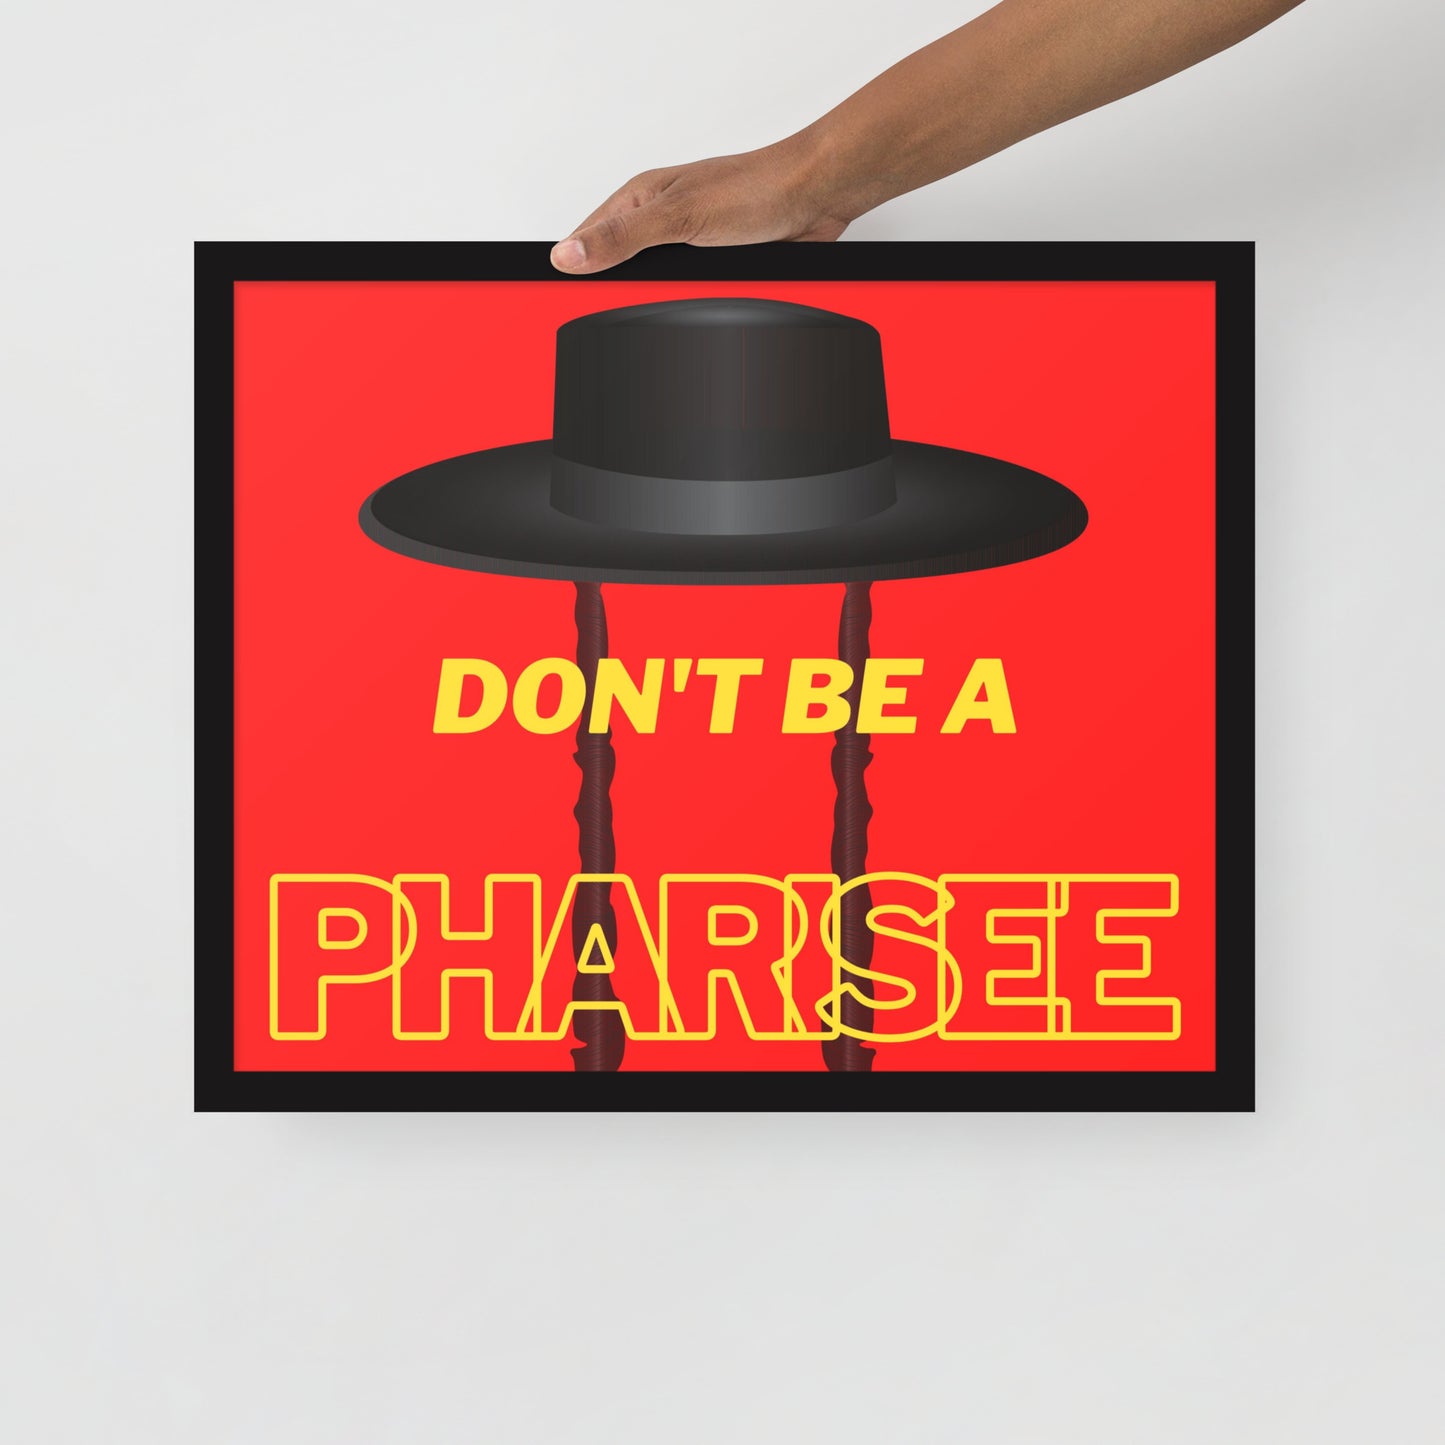 Framed poster - Don't be pharisee